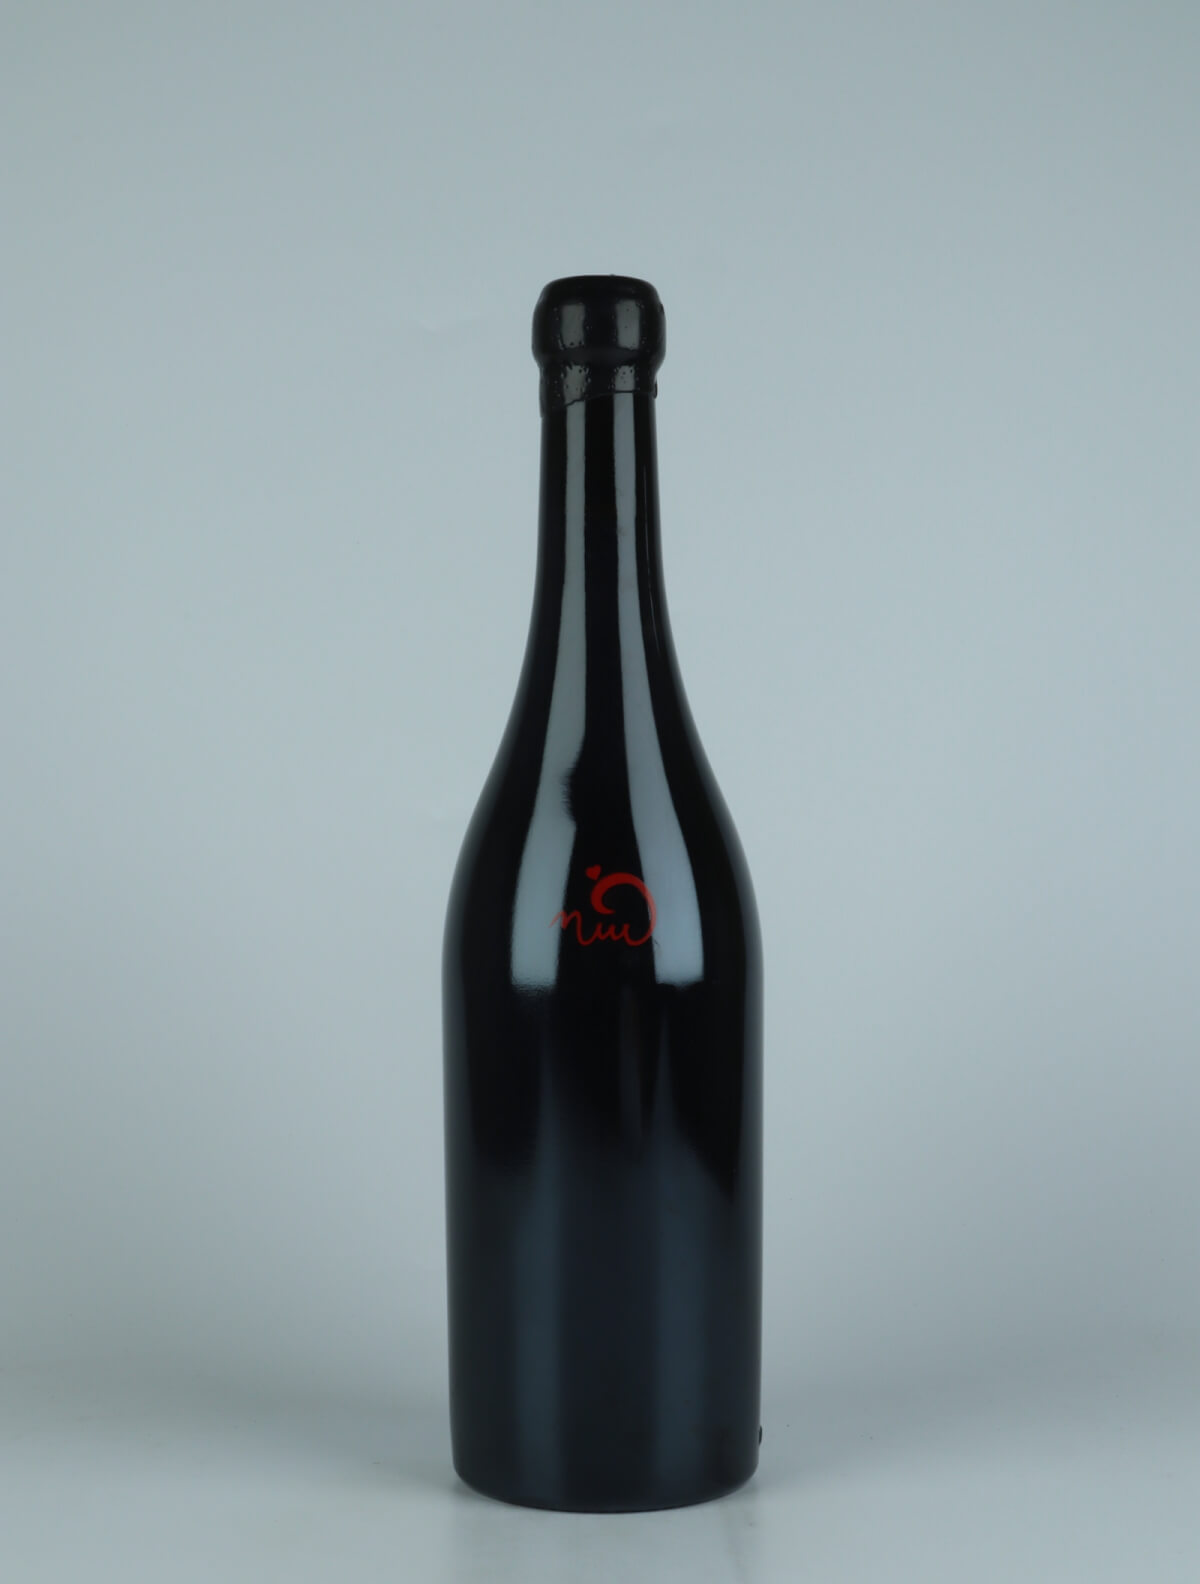 A bottle 2019 Vi Negre Red wine from Els Jelipins, Penedès in Spain